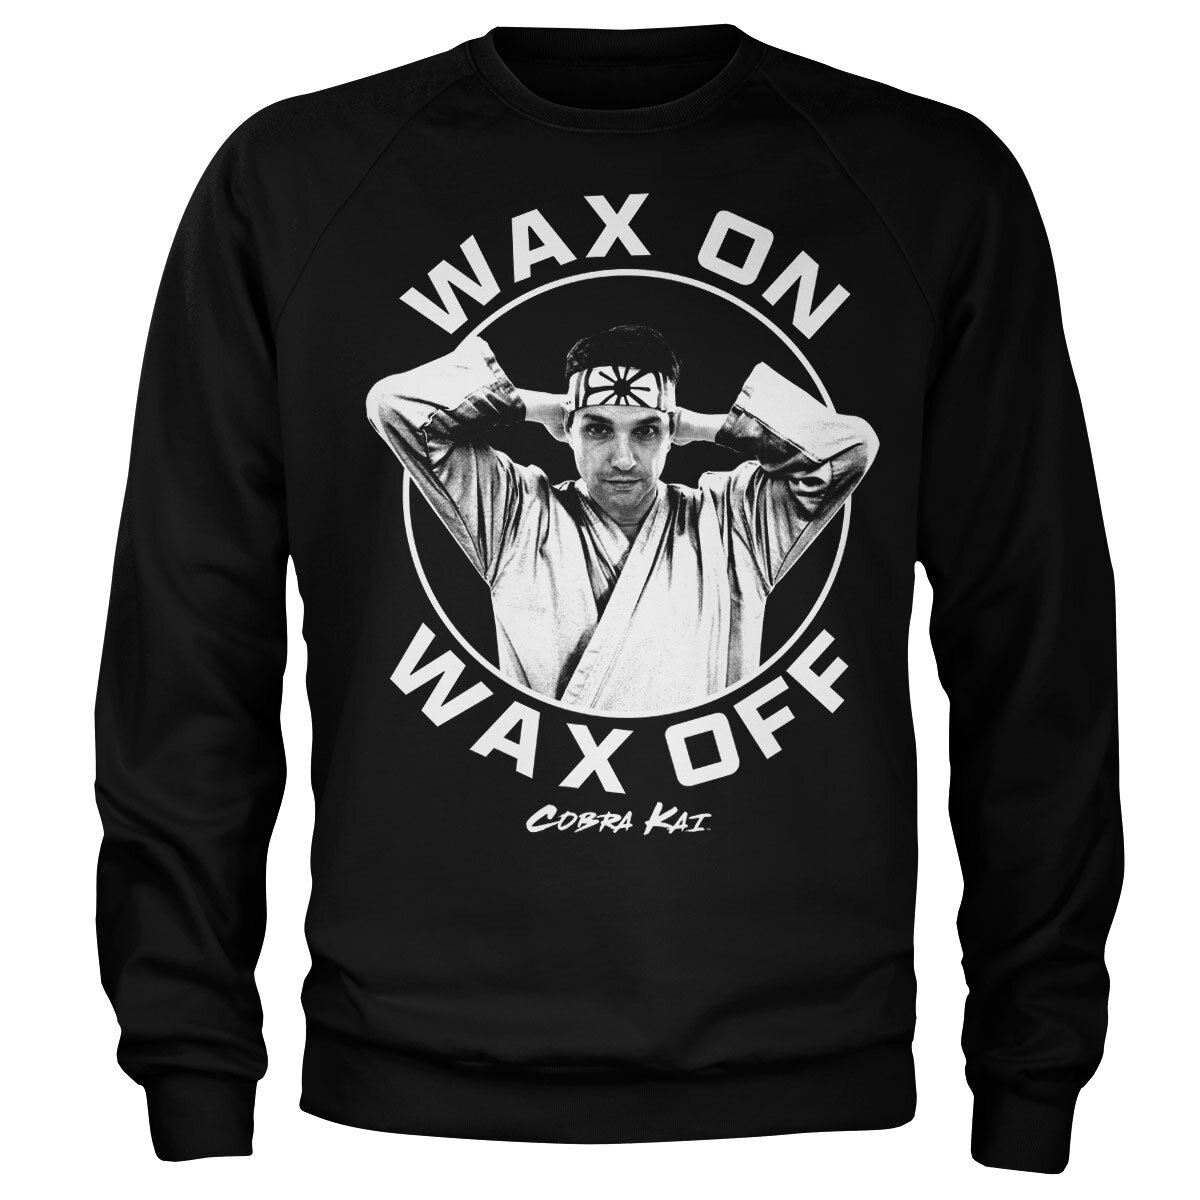 Wax On Wax Off Sweatshirt